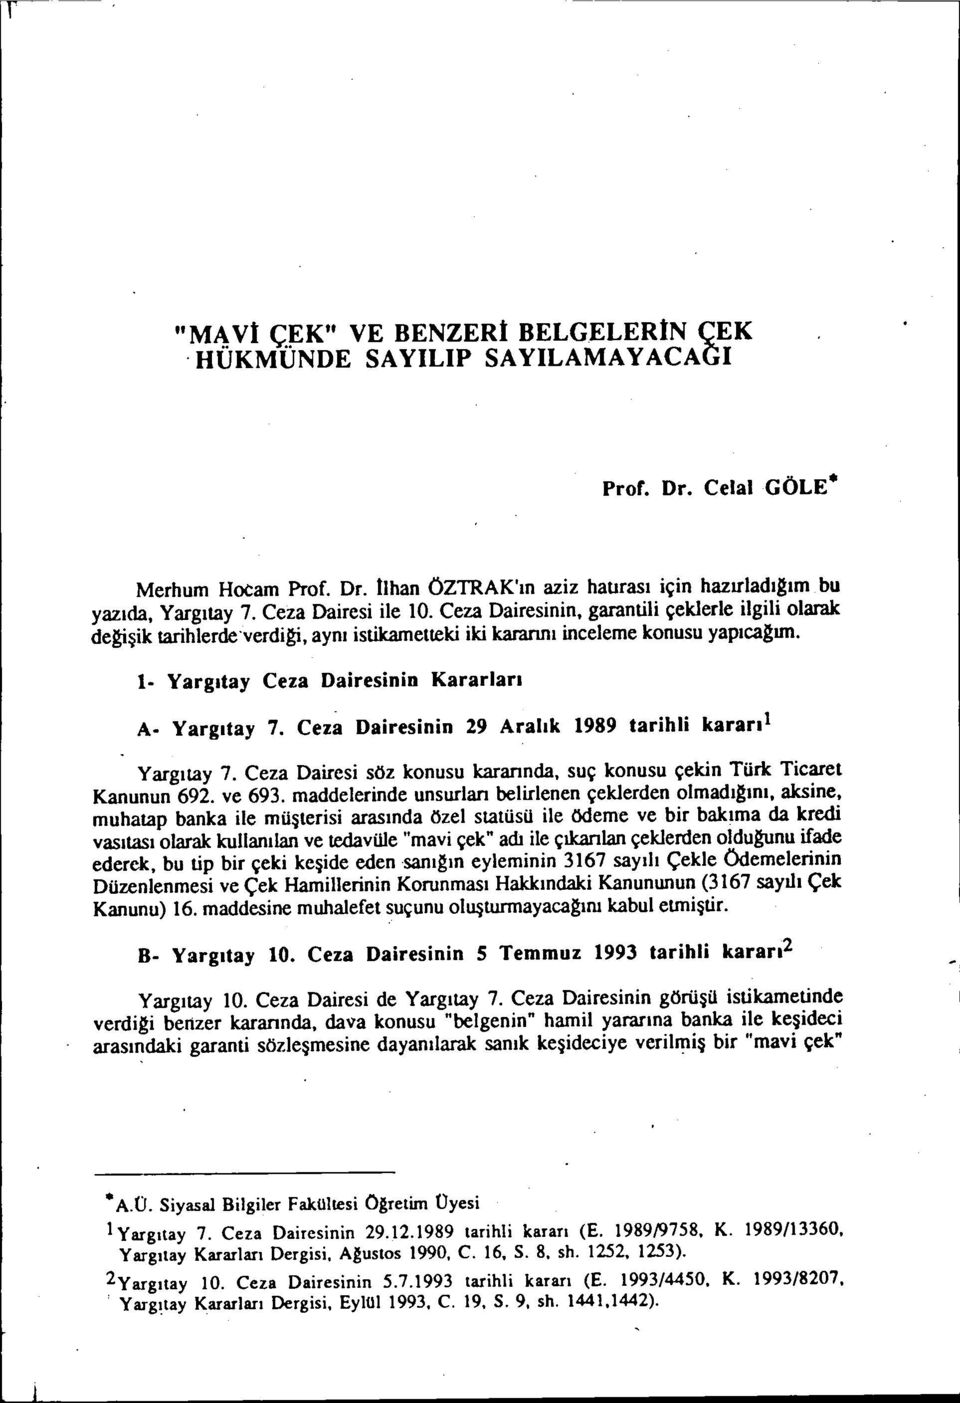 Yargıtay 7. Ceza Dairesinin 29 Aralık 1989 tarihli kararıı Yargıtay 7. Ceza Dairesi söz konusu karannda, suç konusu çekin Türk Ticaret Kanunun 692. ve 693.